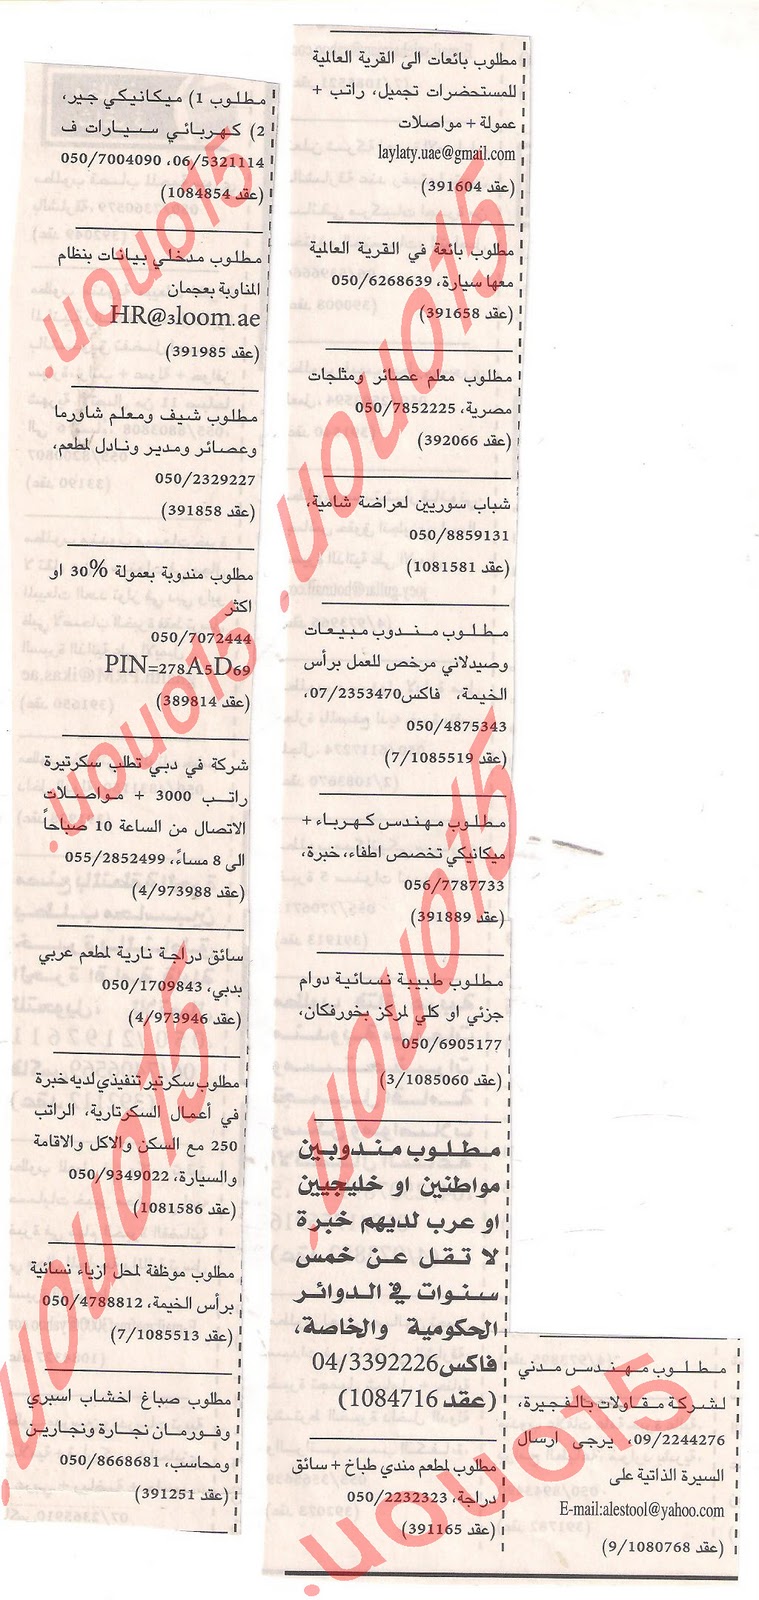 وظائف شاغرة من جريدة الخليج اللأحد 11\12\2011  Picture+005